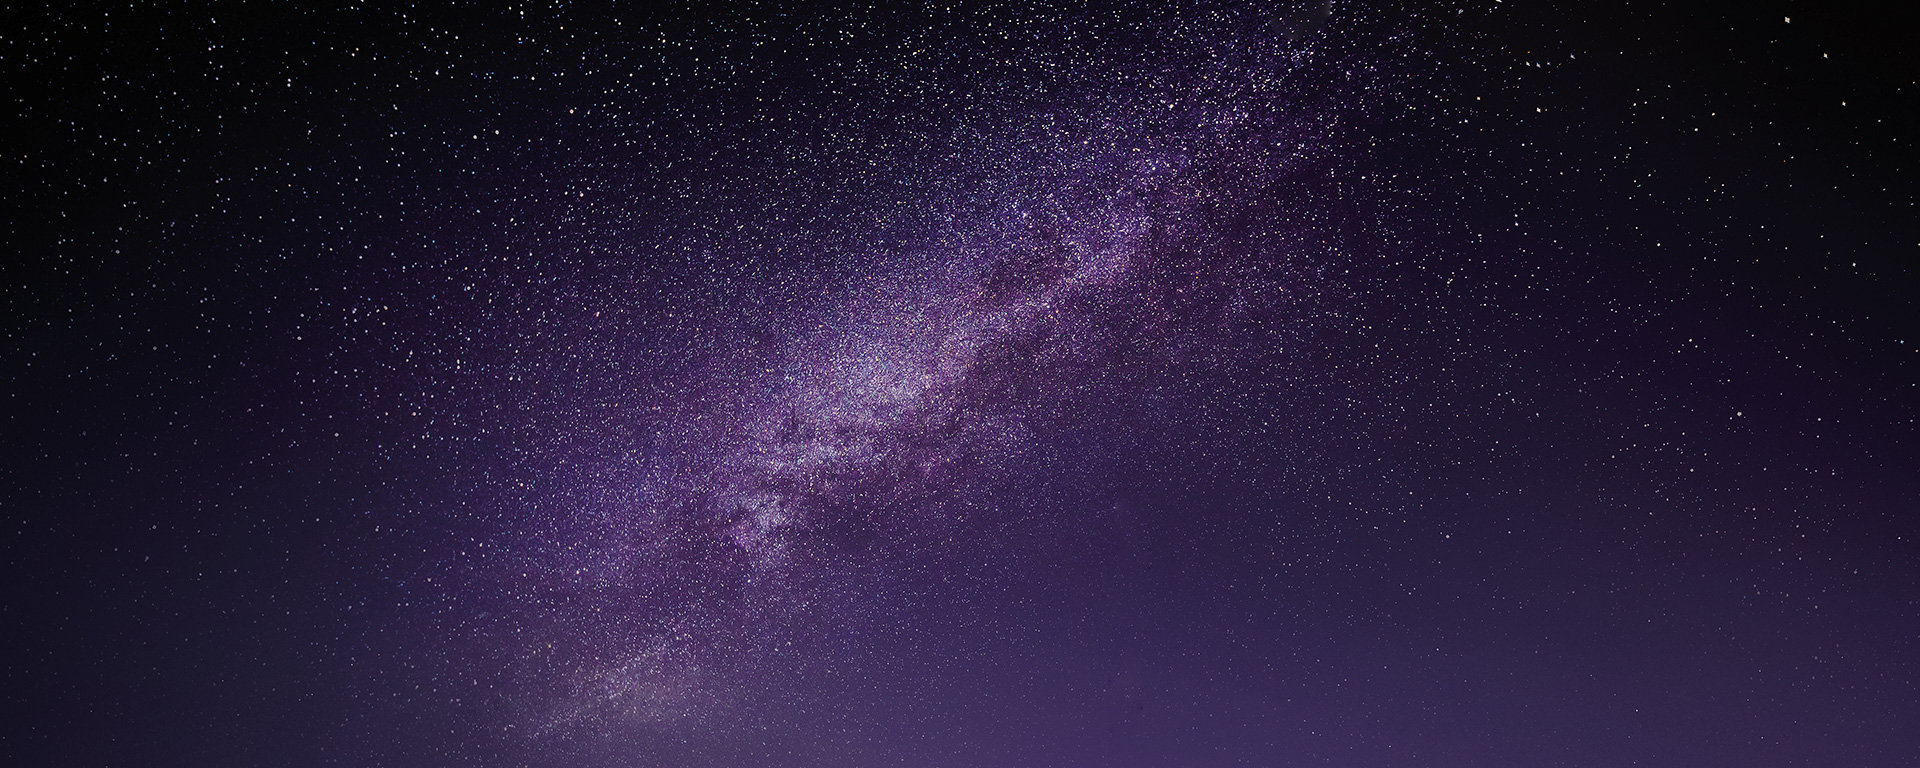 A starry night sky.